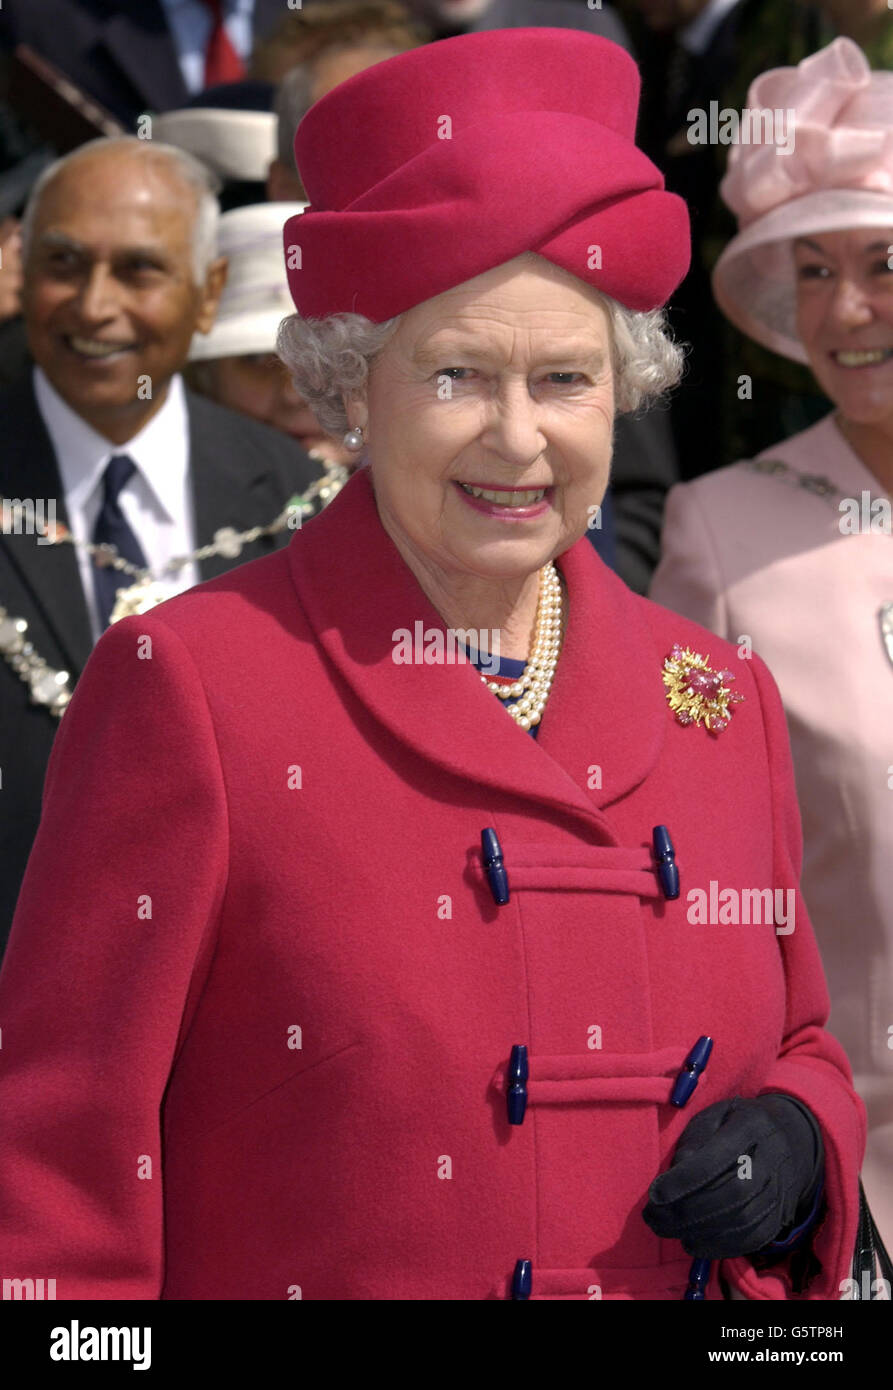 Königliche Hoheit - Königin Elizabeth II Golden Jubilee. Königin Elizabeth II. Verlässt die Truro Cathedral, nachdem sie in der kornischen Stadt zu Mittag gegessen hat. Stockfoto